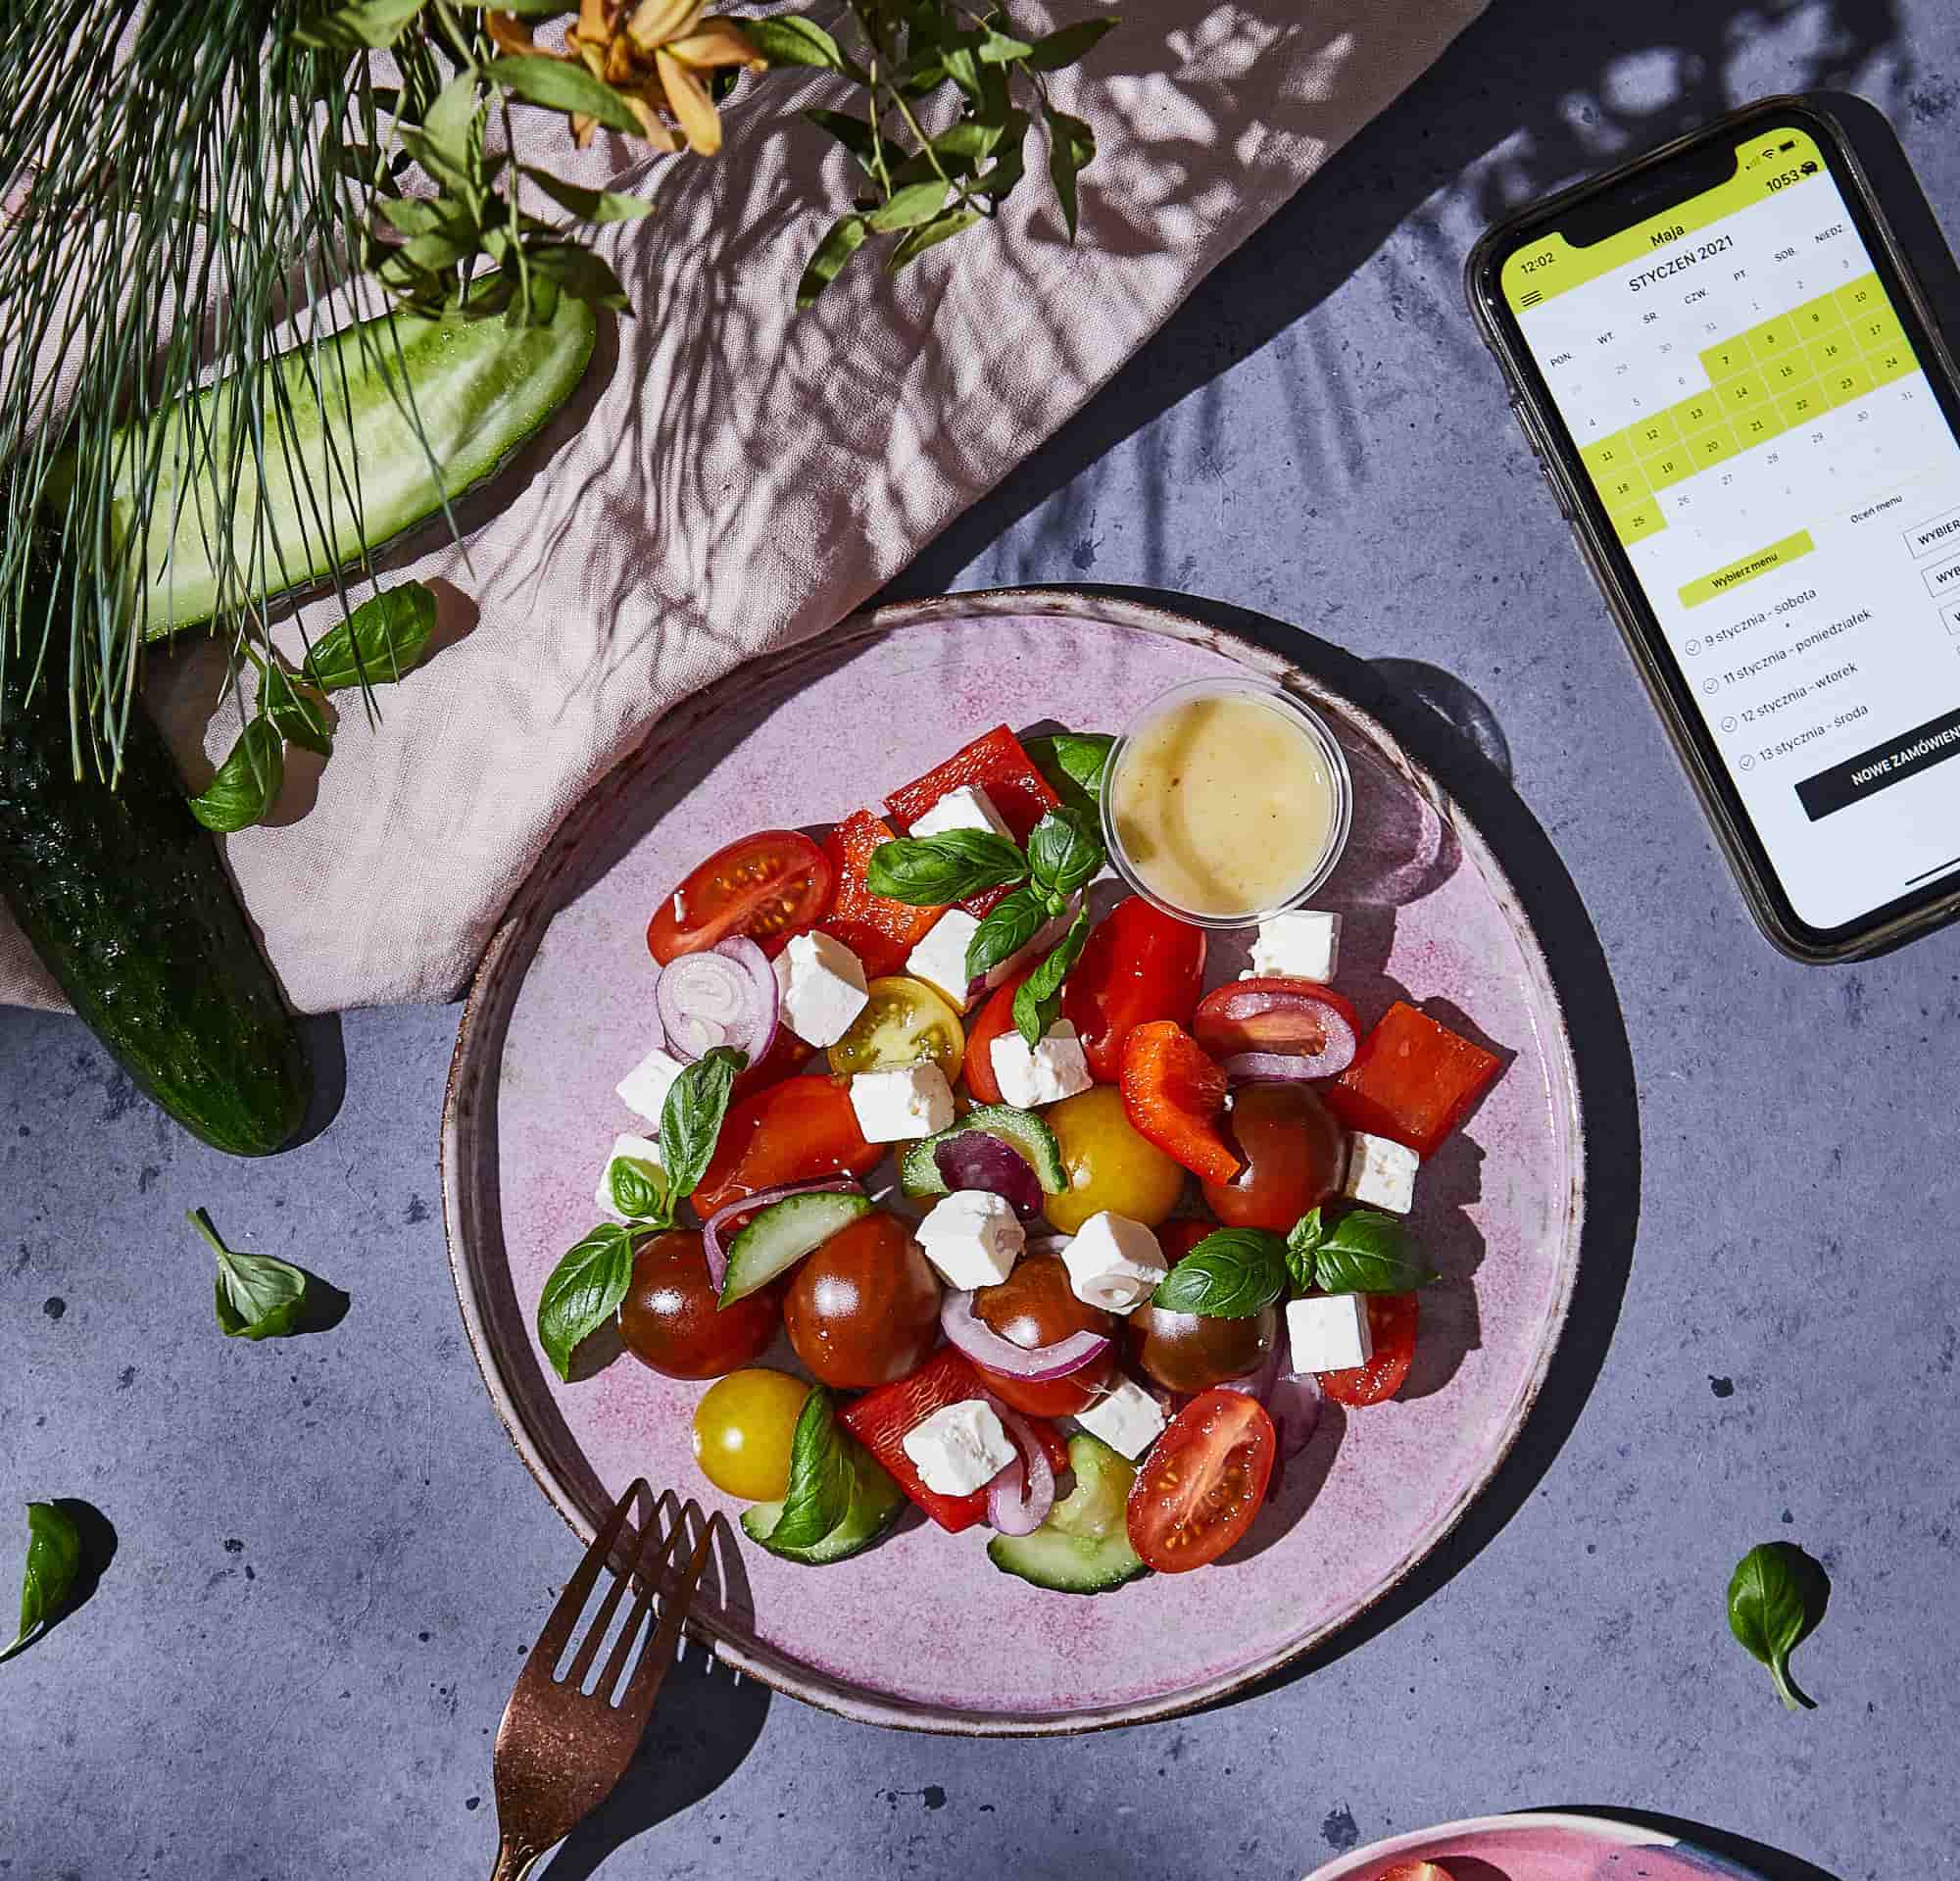 jak przyspieszyc metabolizm aplikacja ntfy catering salatka grecka feta winogrona talerz